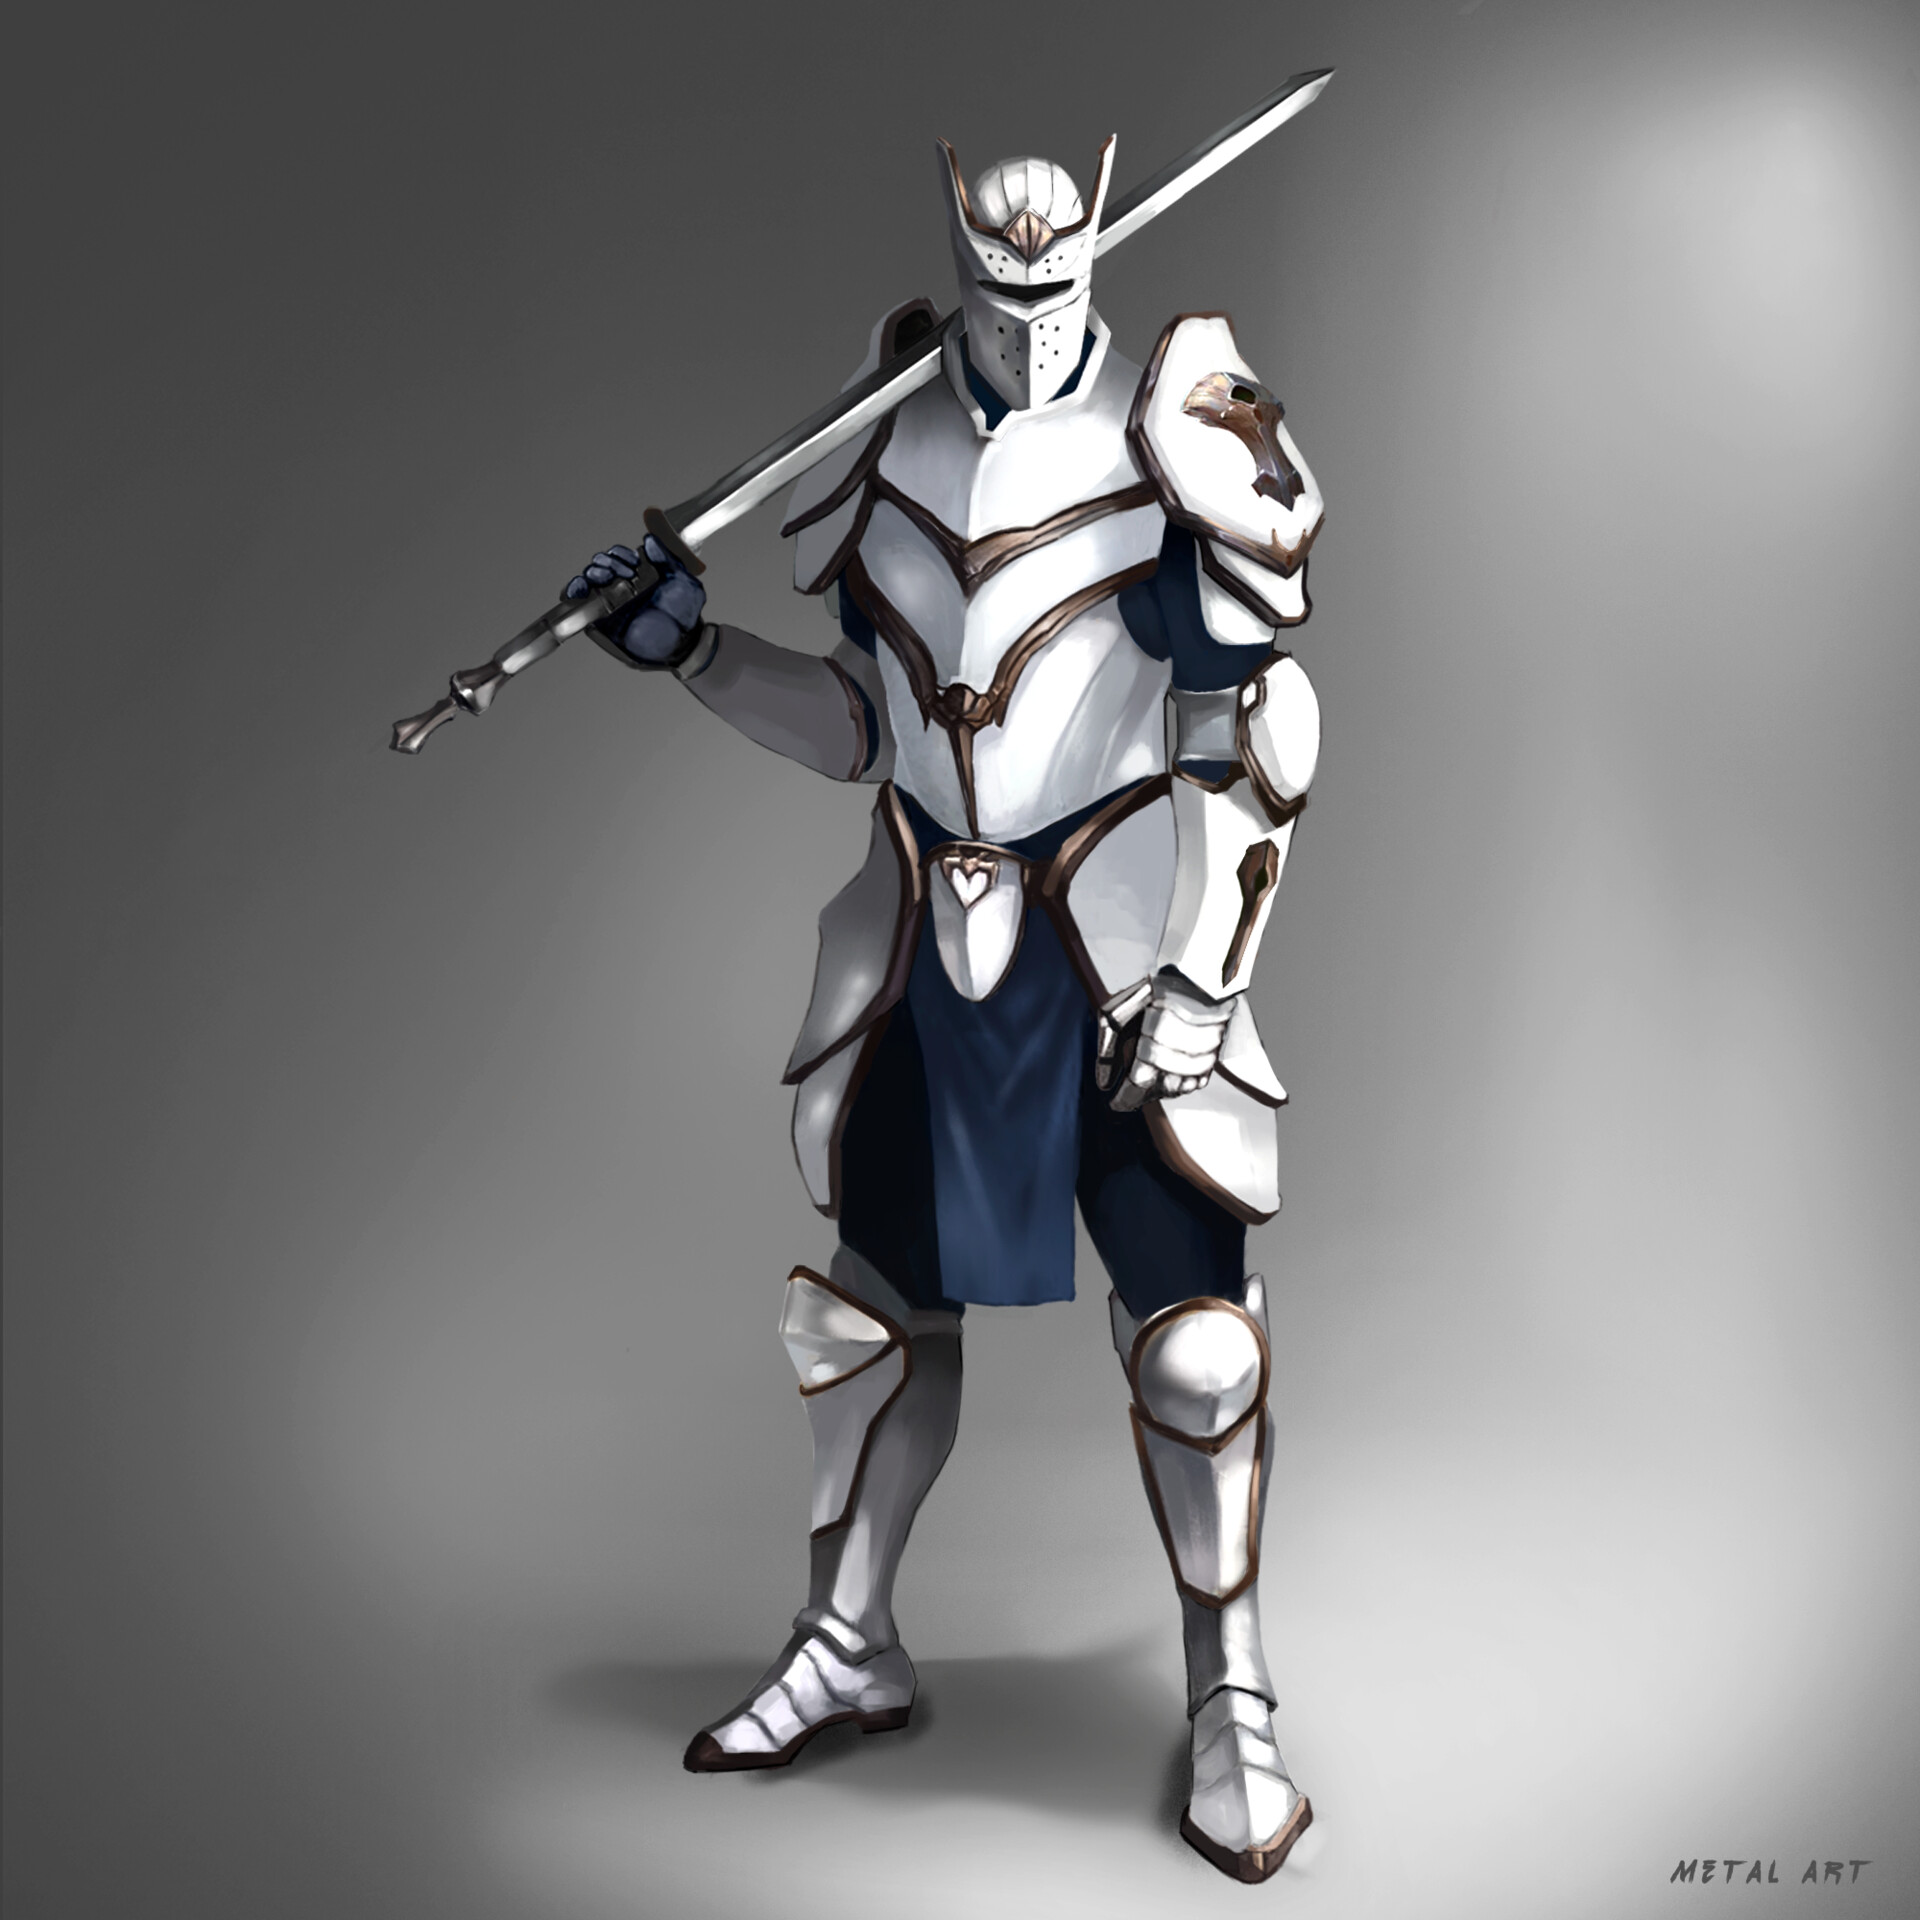 ArtStation - White knight.